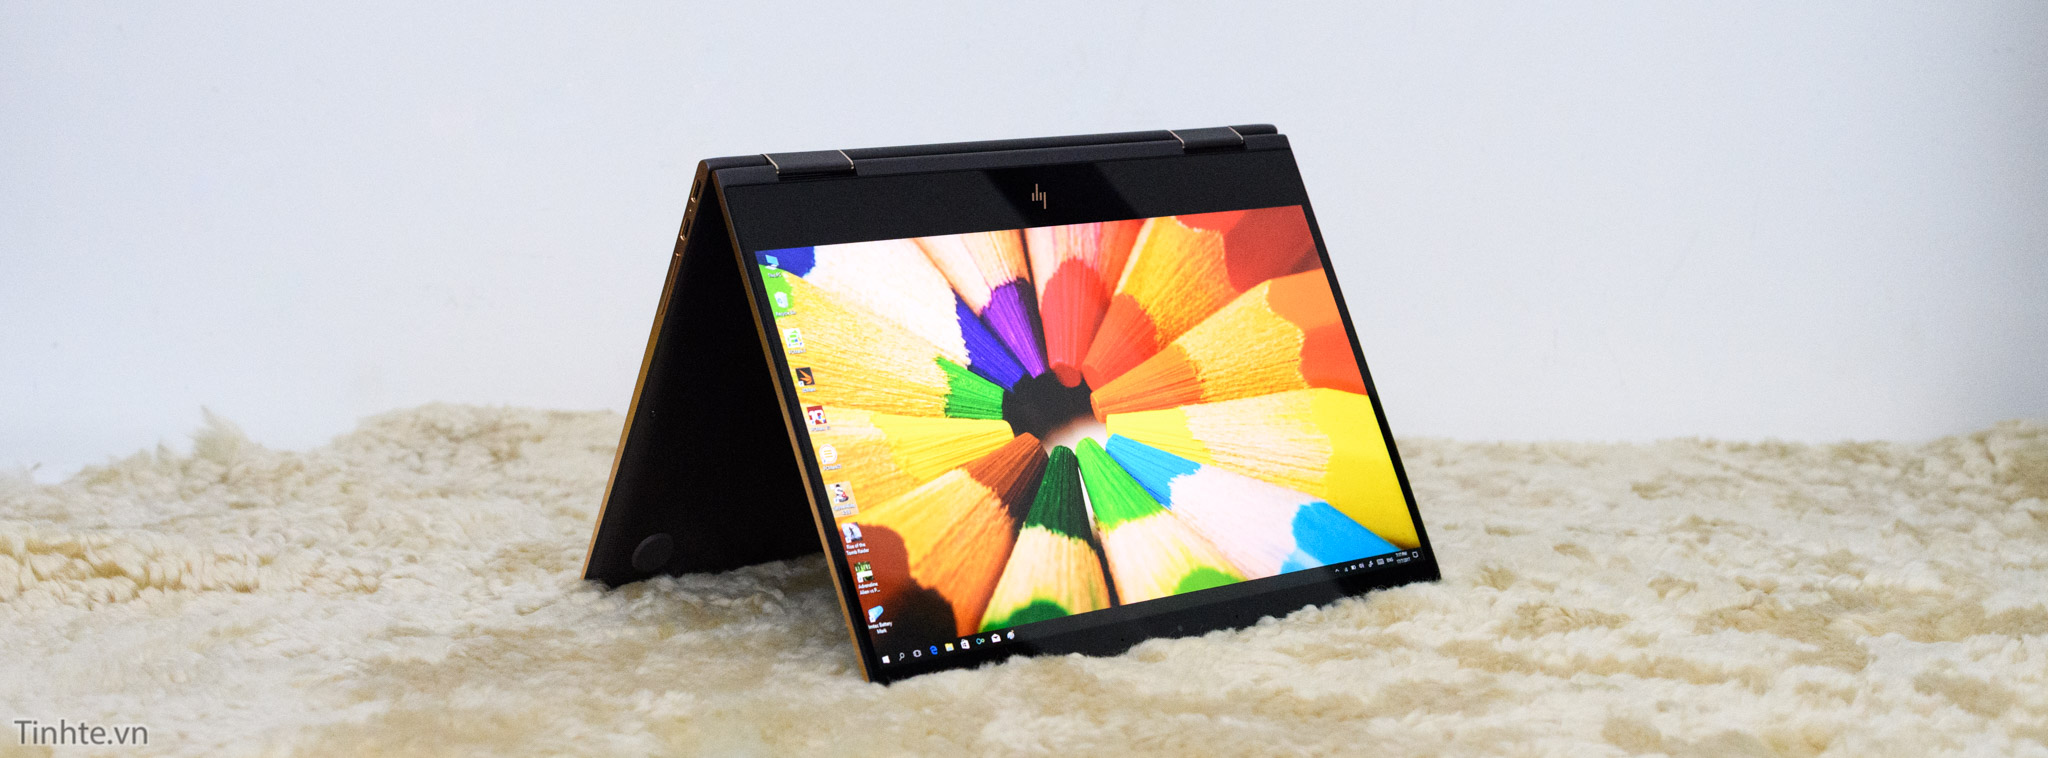 Trên tay HP Spectre x360 – Thiết kế tinh xảo, màn hình xoay 360 độ